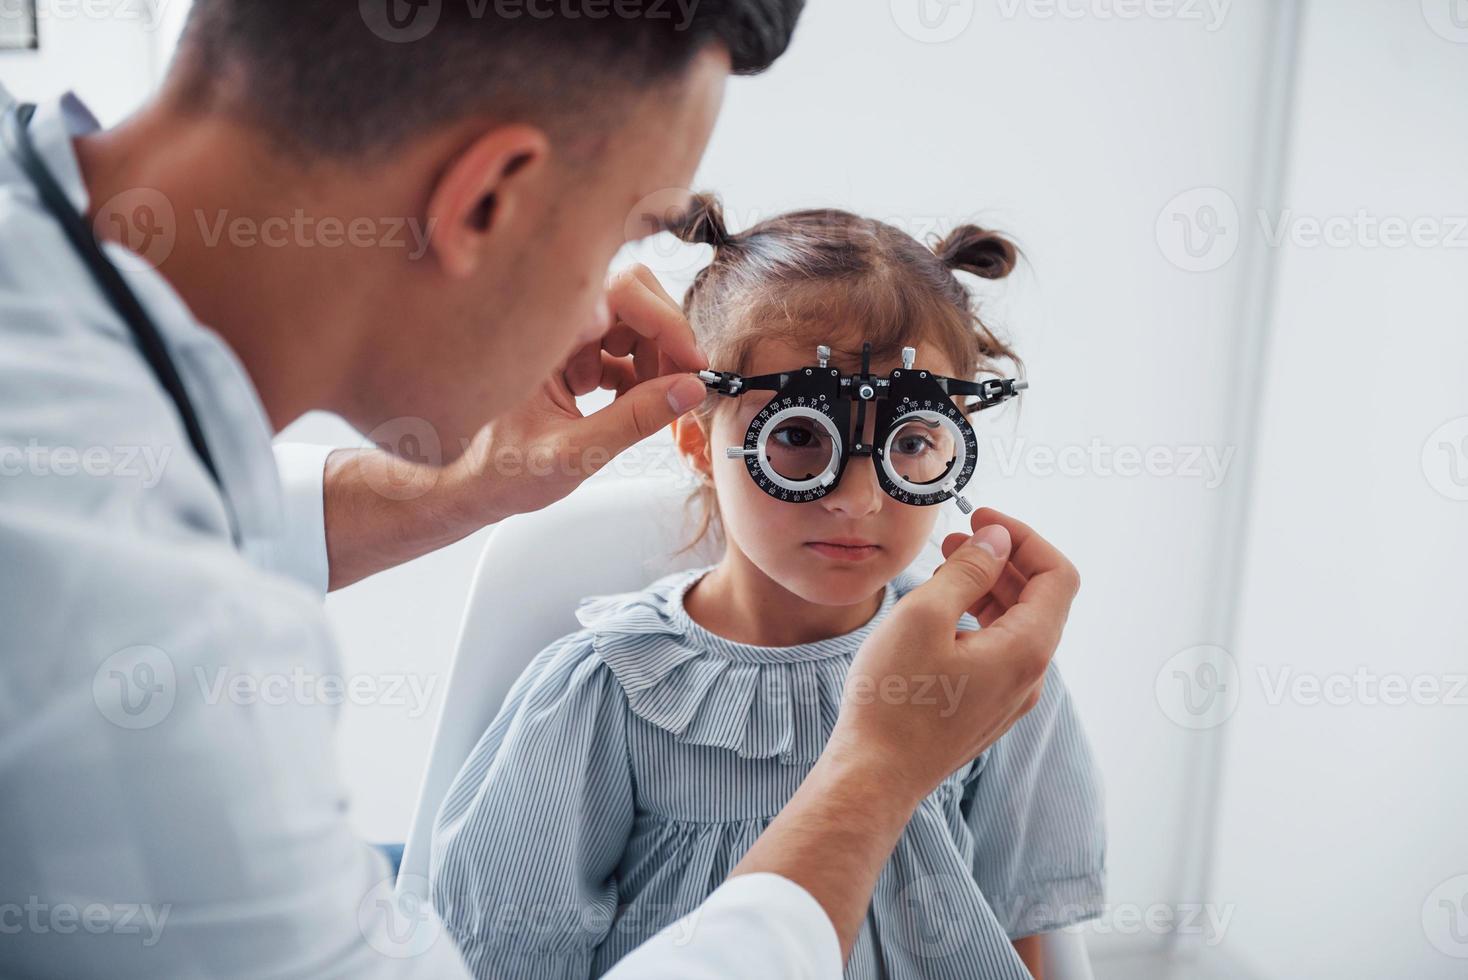 probando la visión. joven oftalmólogo está con una pequeña visitante en la clínica foto